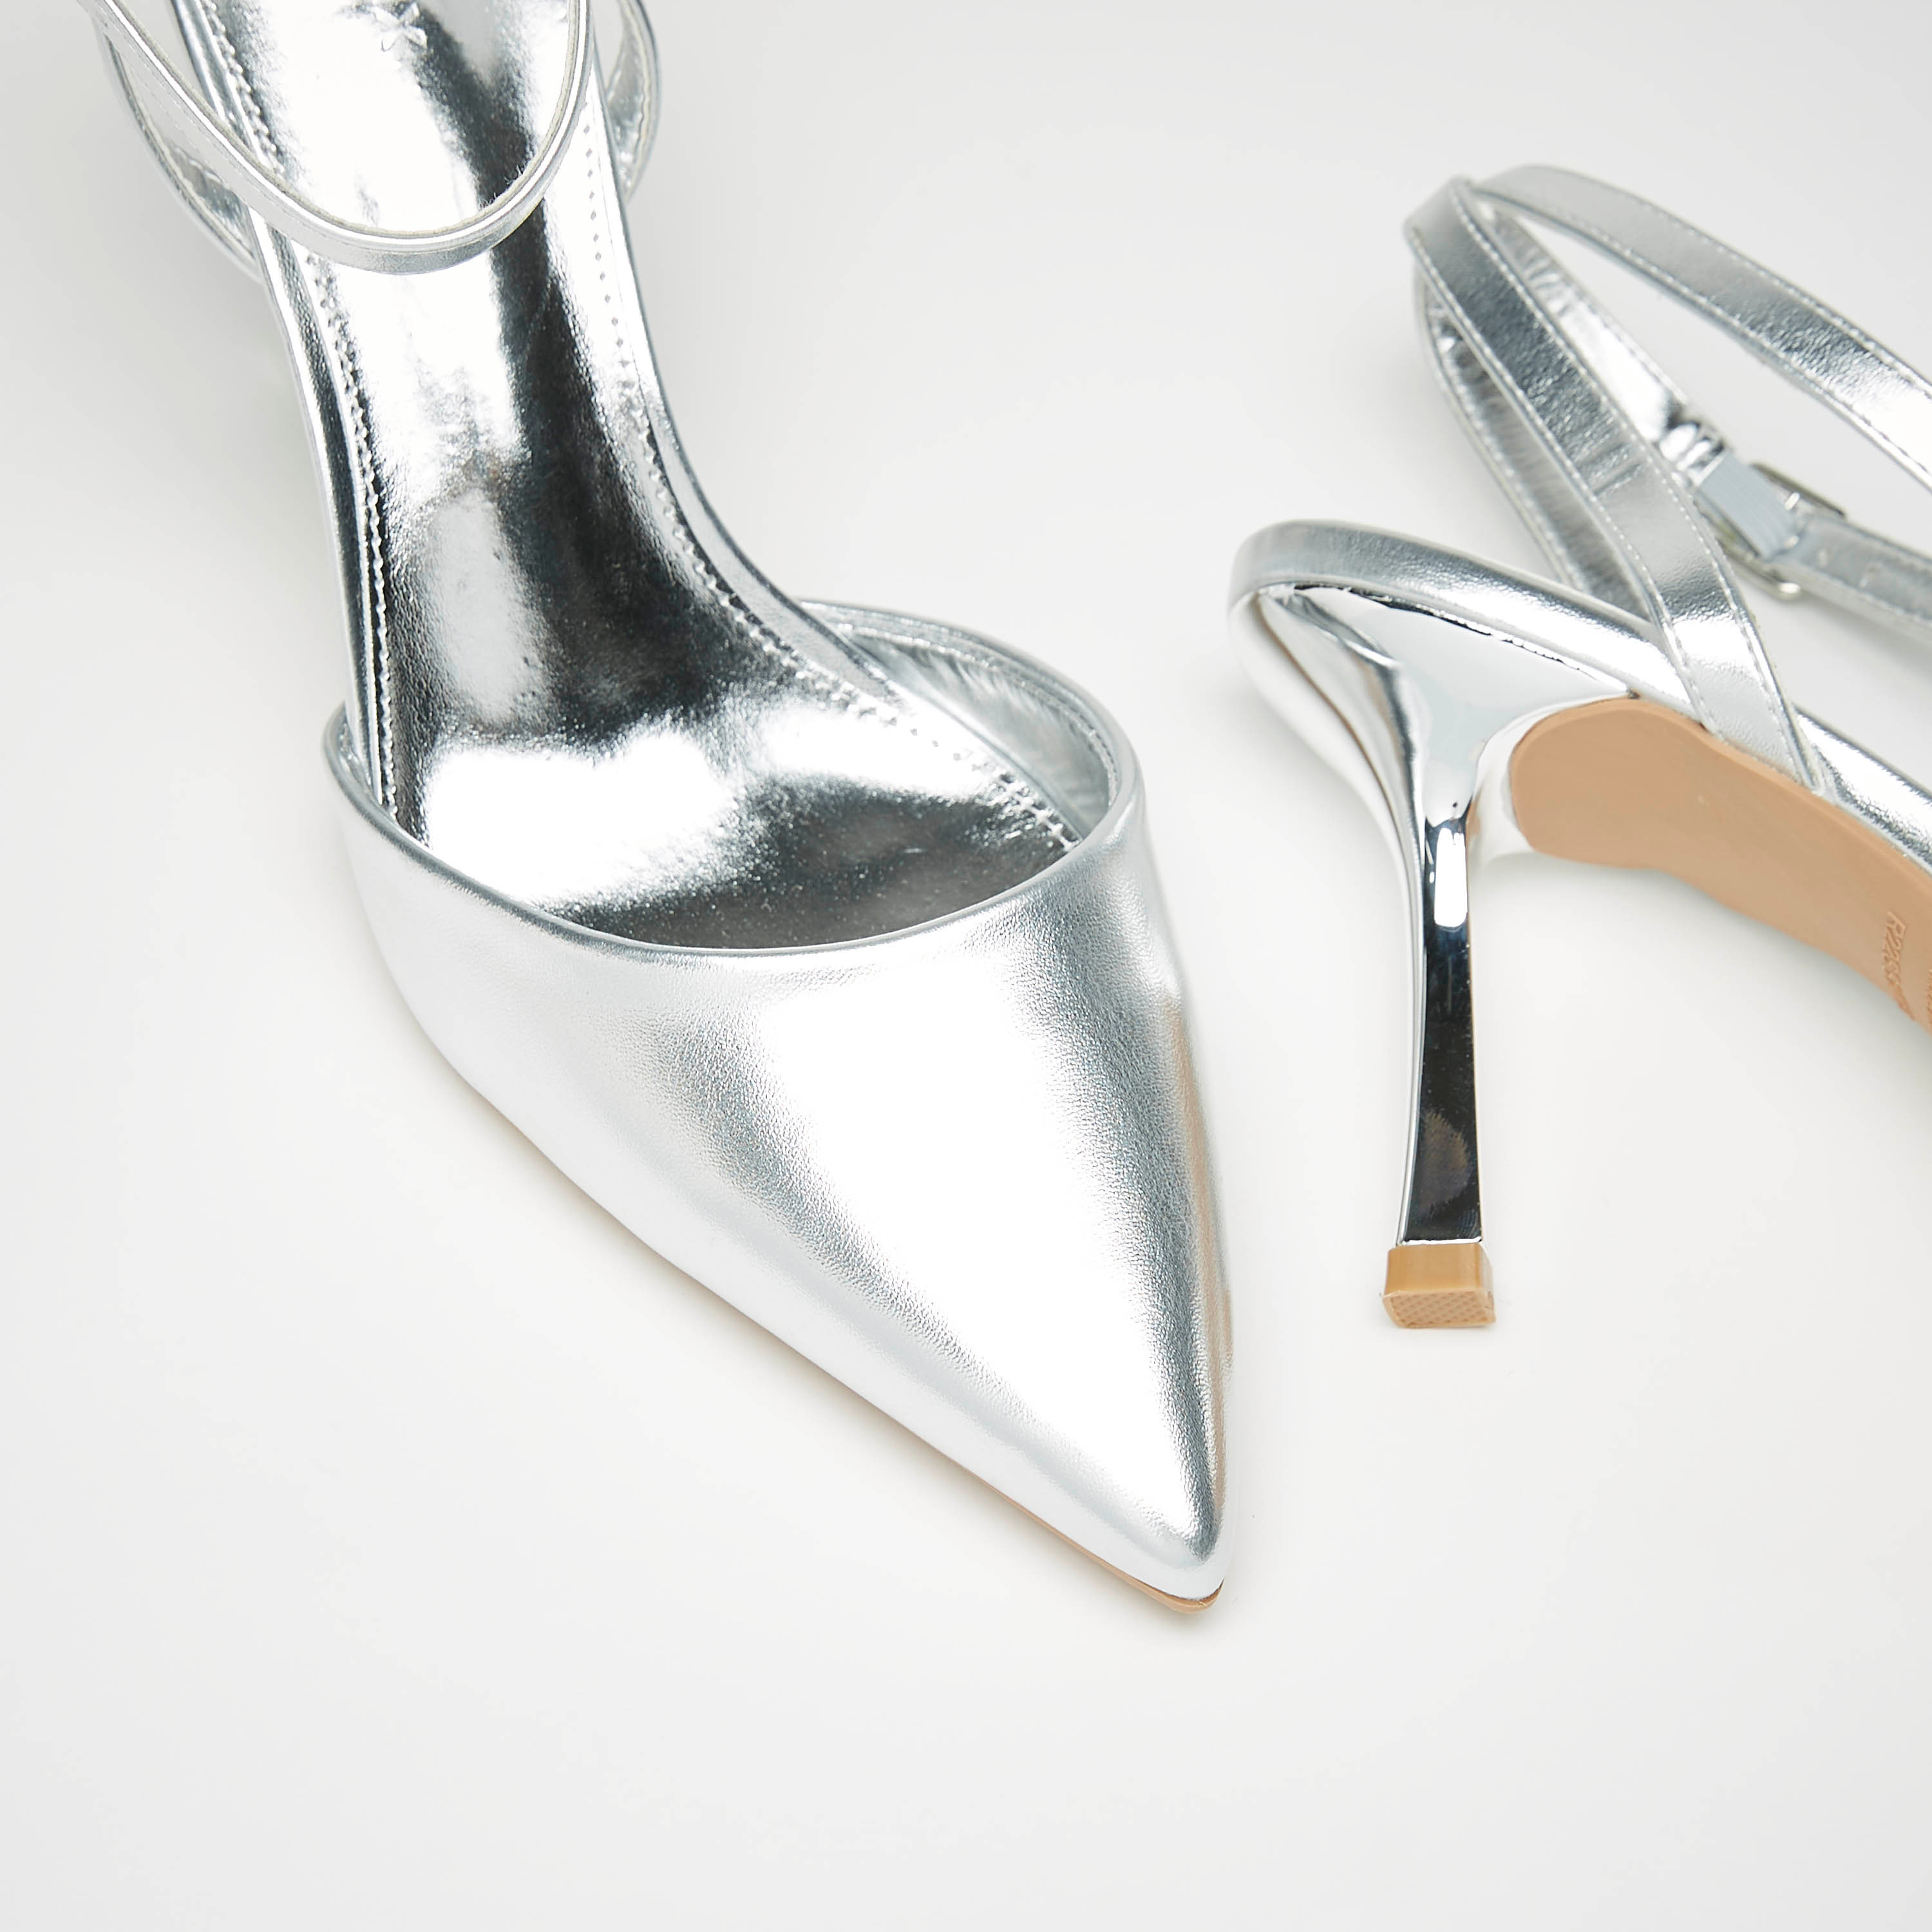 LAILEY Nude High Heels | Buy Women's HEELS Online | Novo Shoes NZ